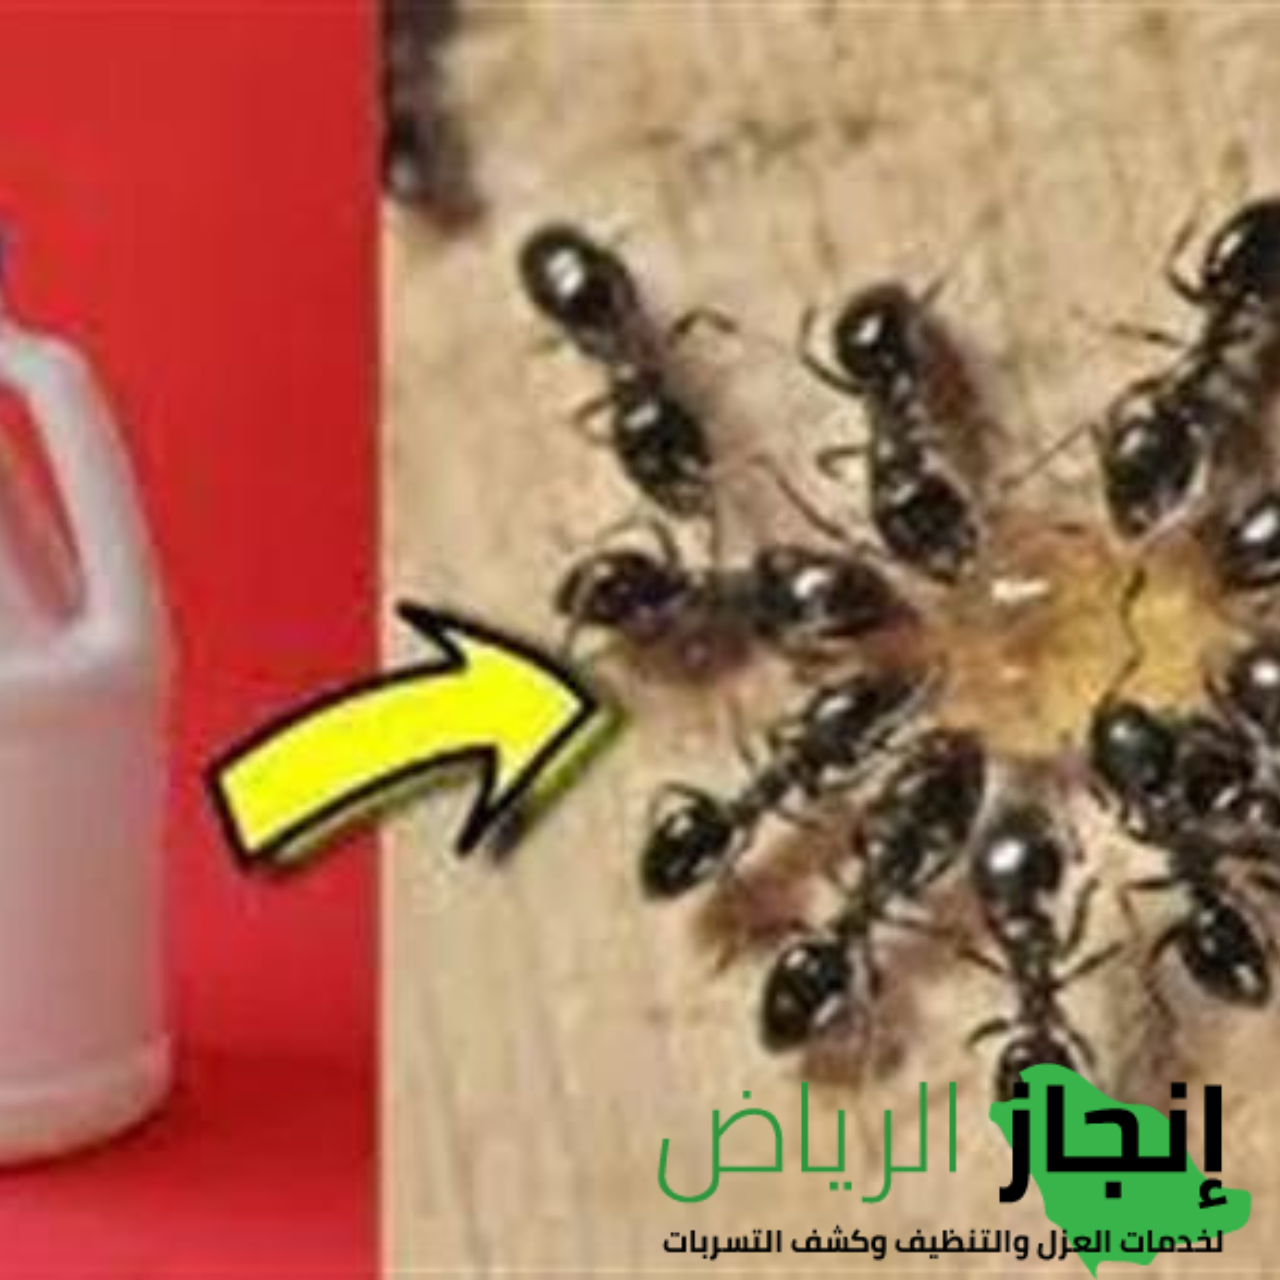 شركة مكافحة الحشرات المنزلية بالمبيدات  في الرياض 